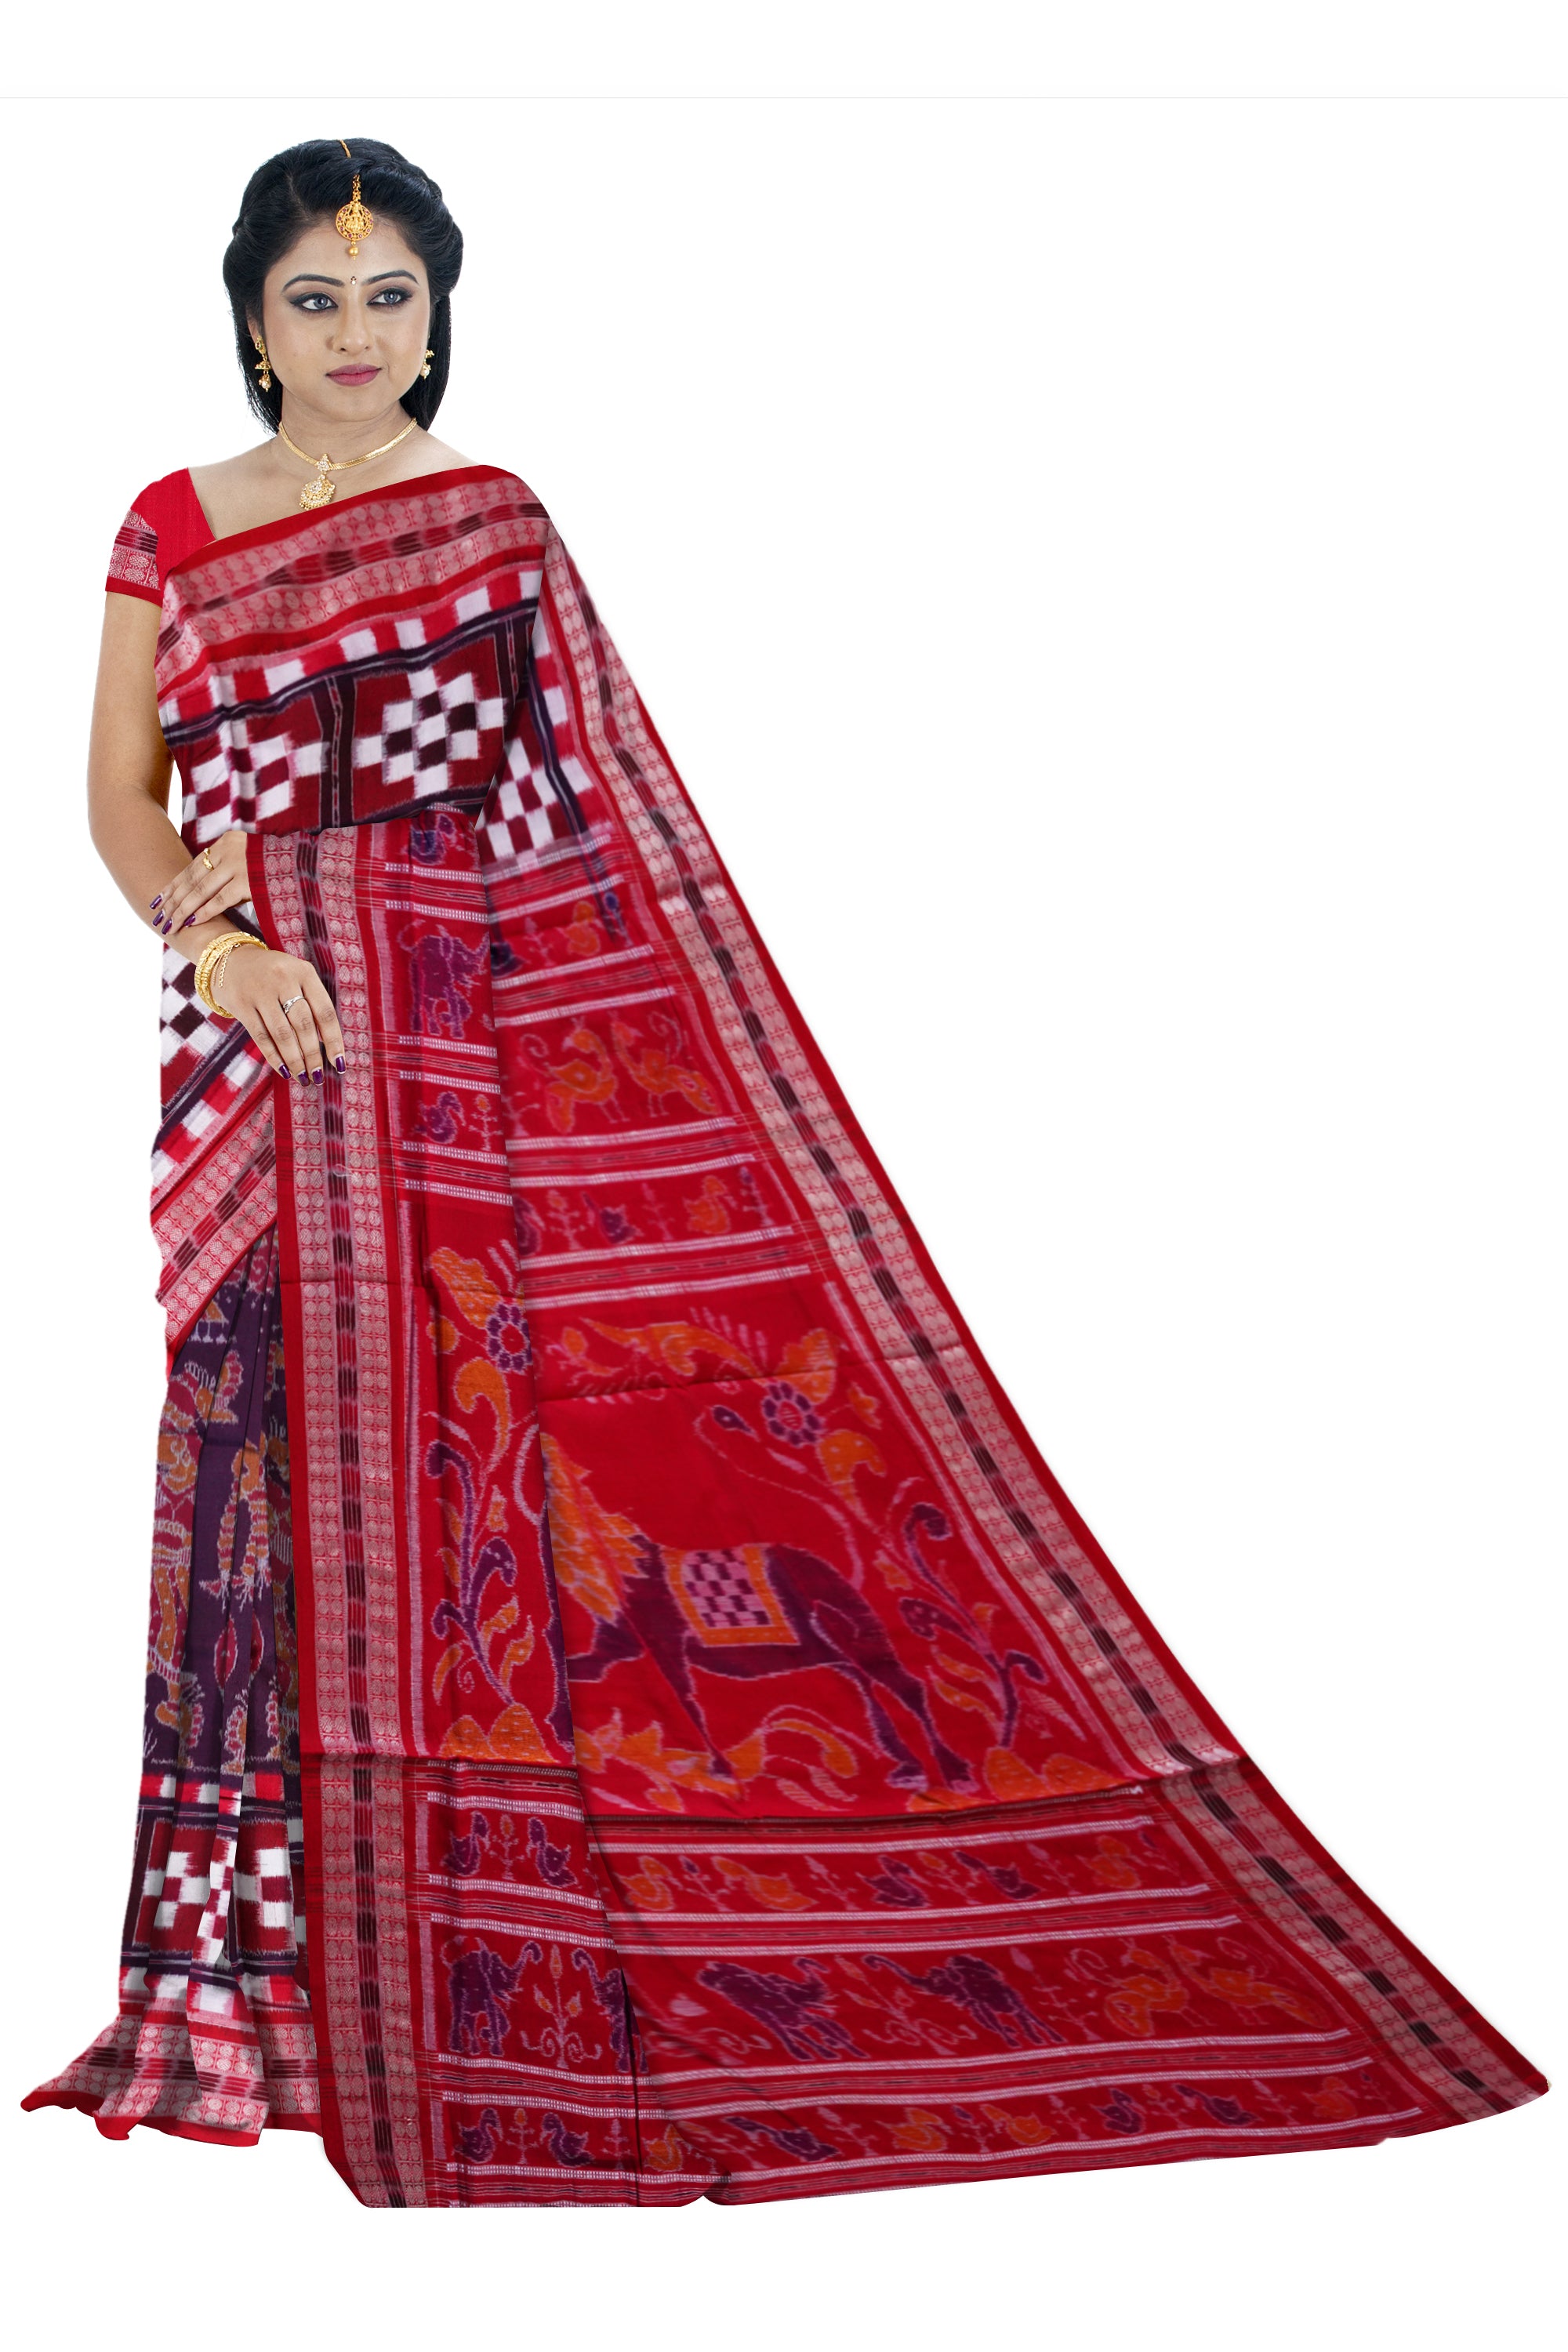 Pasapali with odishi dance pattern pure cotton saree. - Koshali Arts & Crafts Enterprise